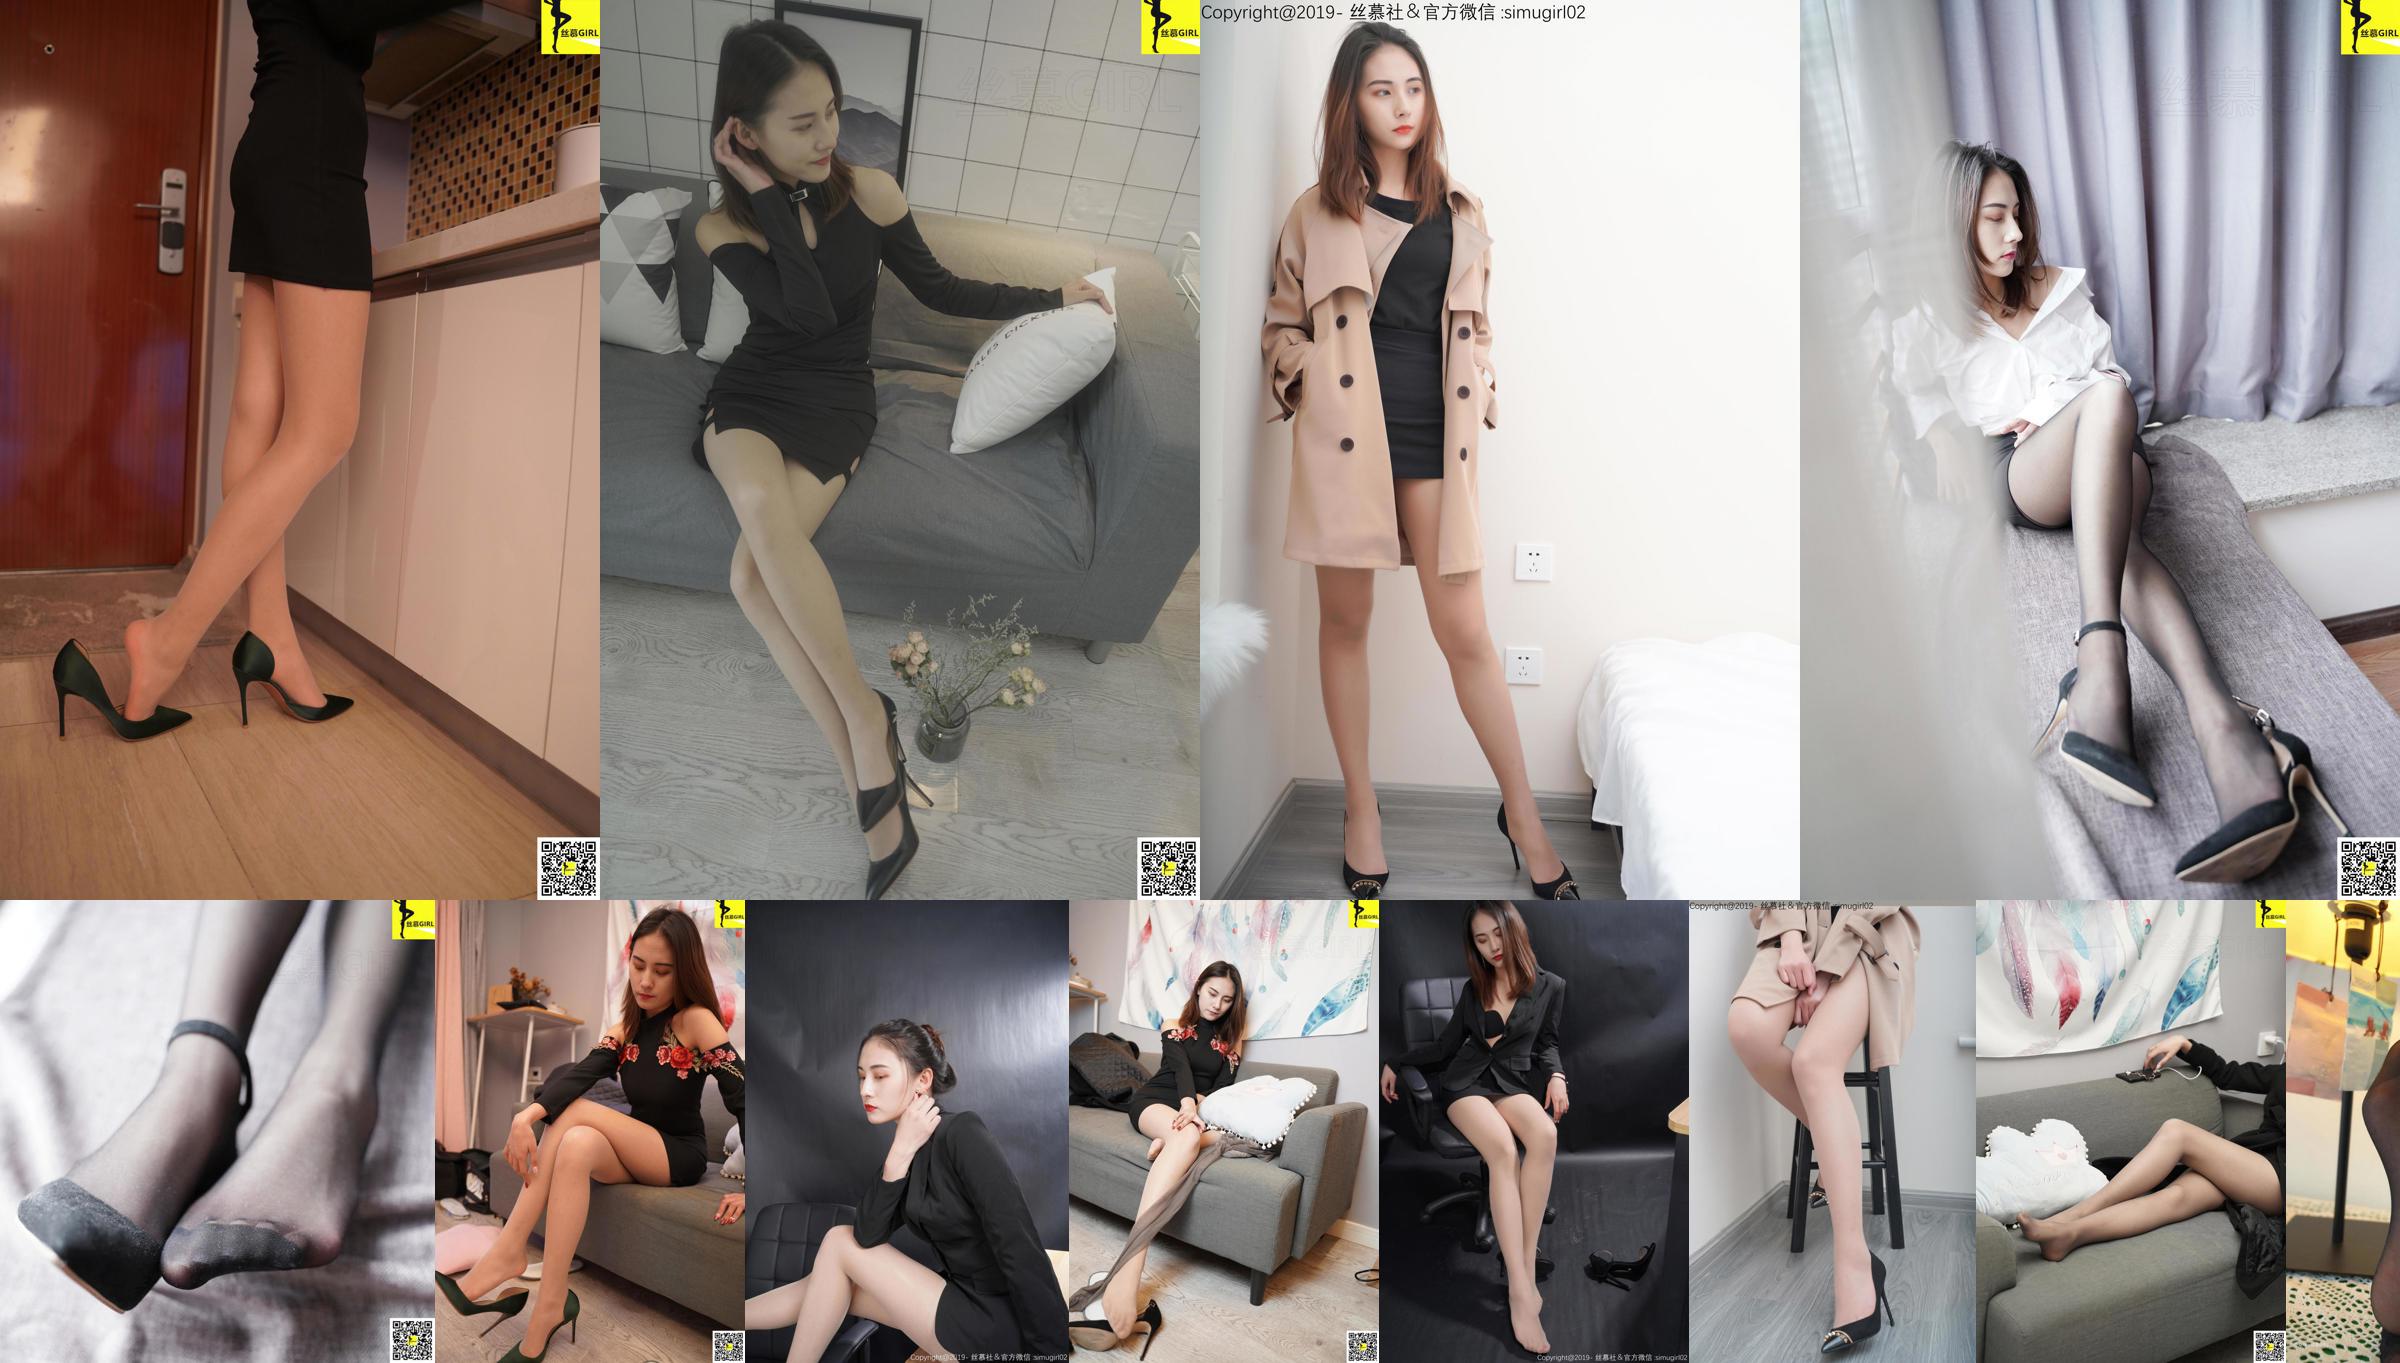 [Simu] SM006 Tingyi "Chefe feminina com pés bonitos" No.640340 Página 8